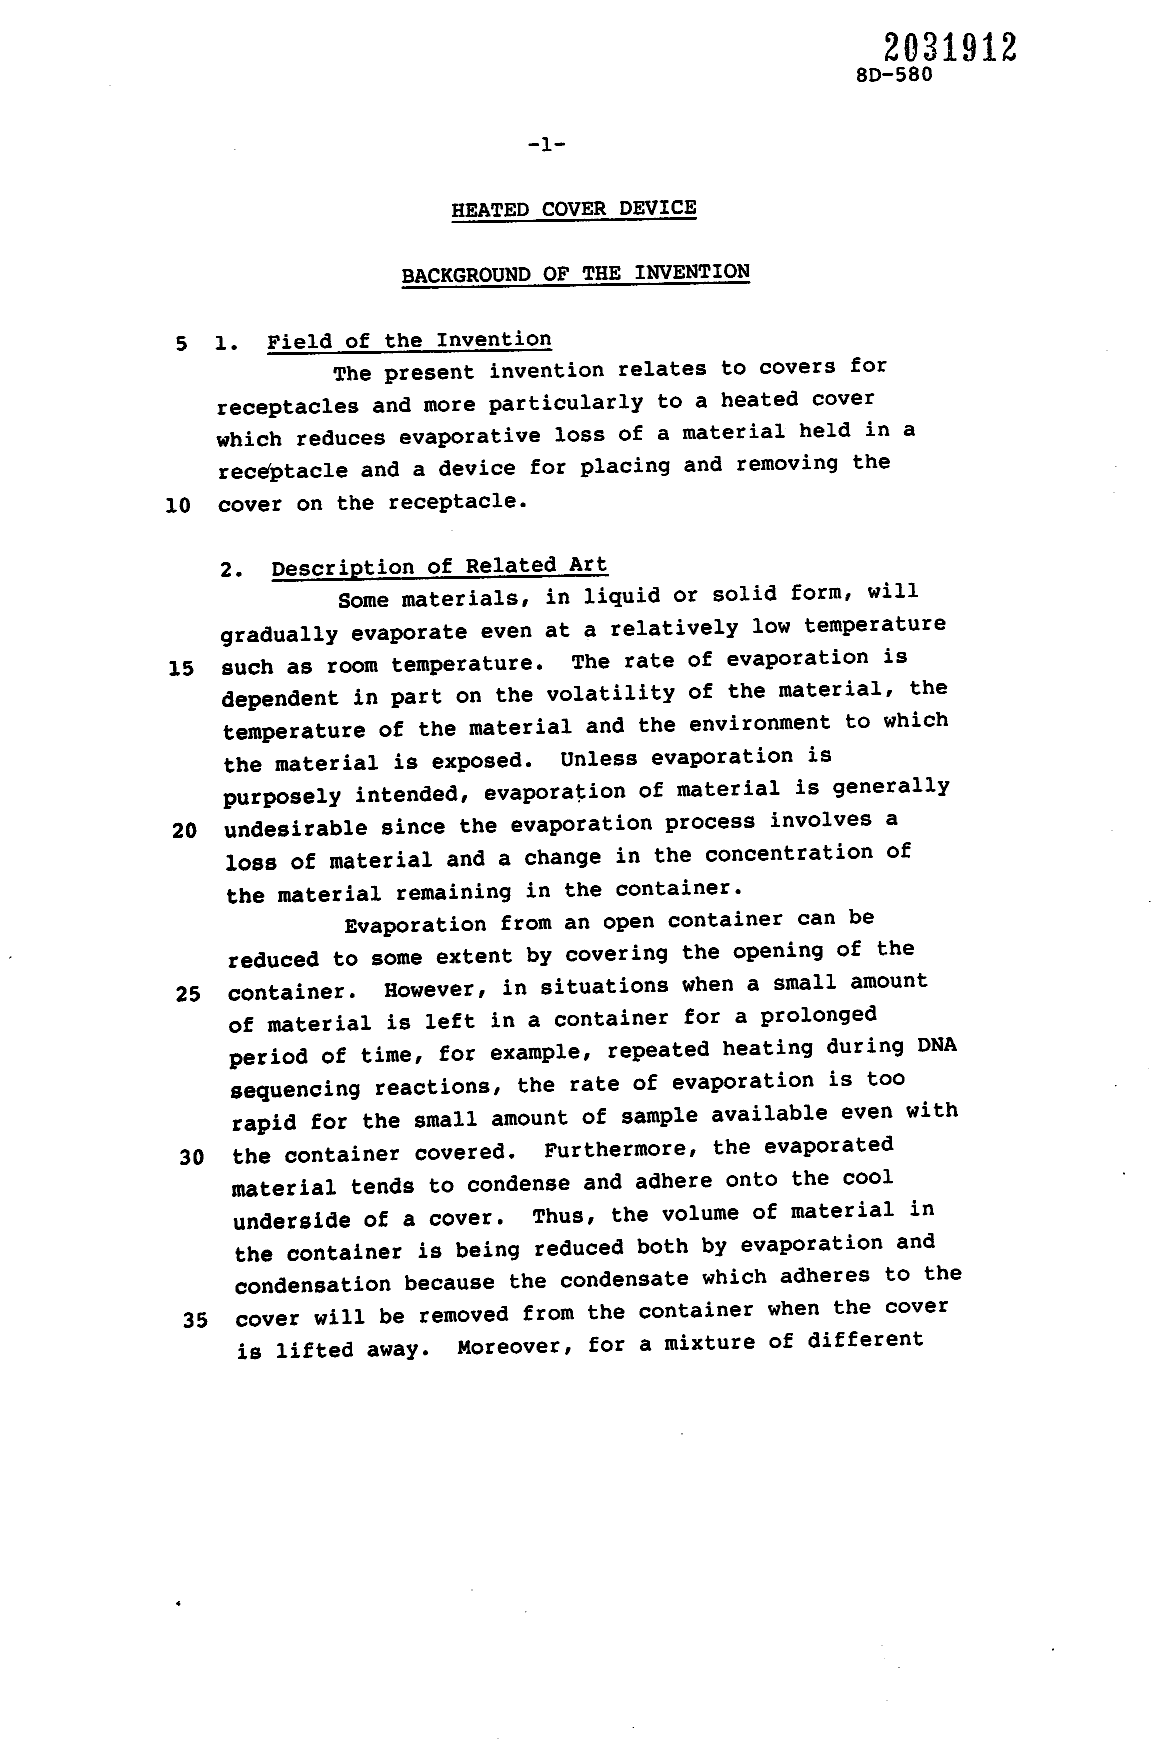 Canadian Patent Document 2031912. Description 19910623. Image 1 of 12